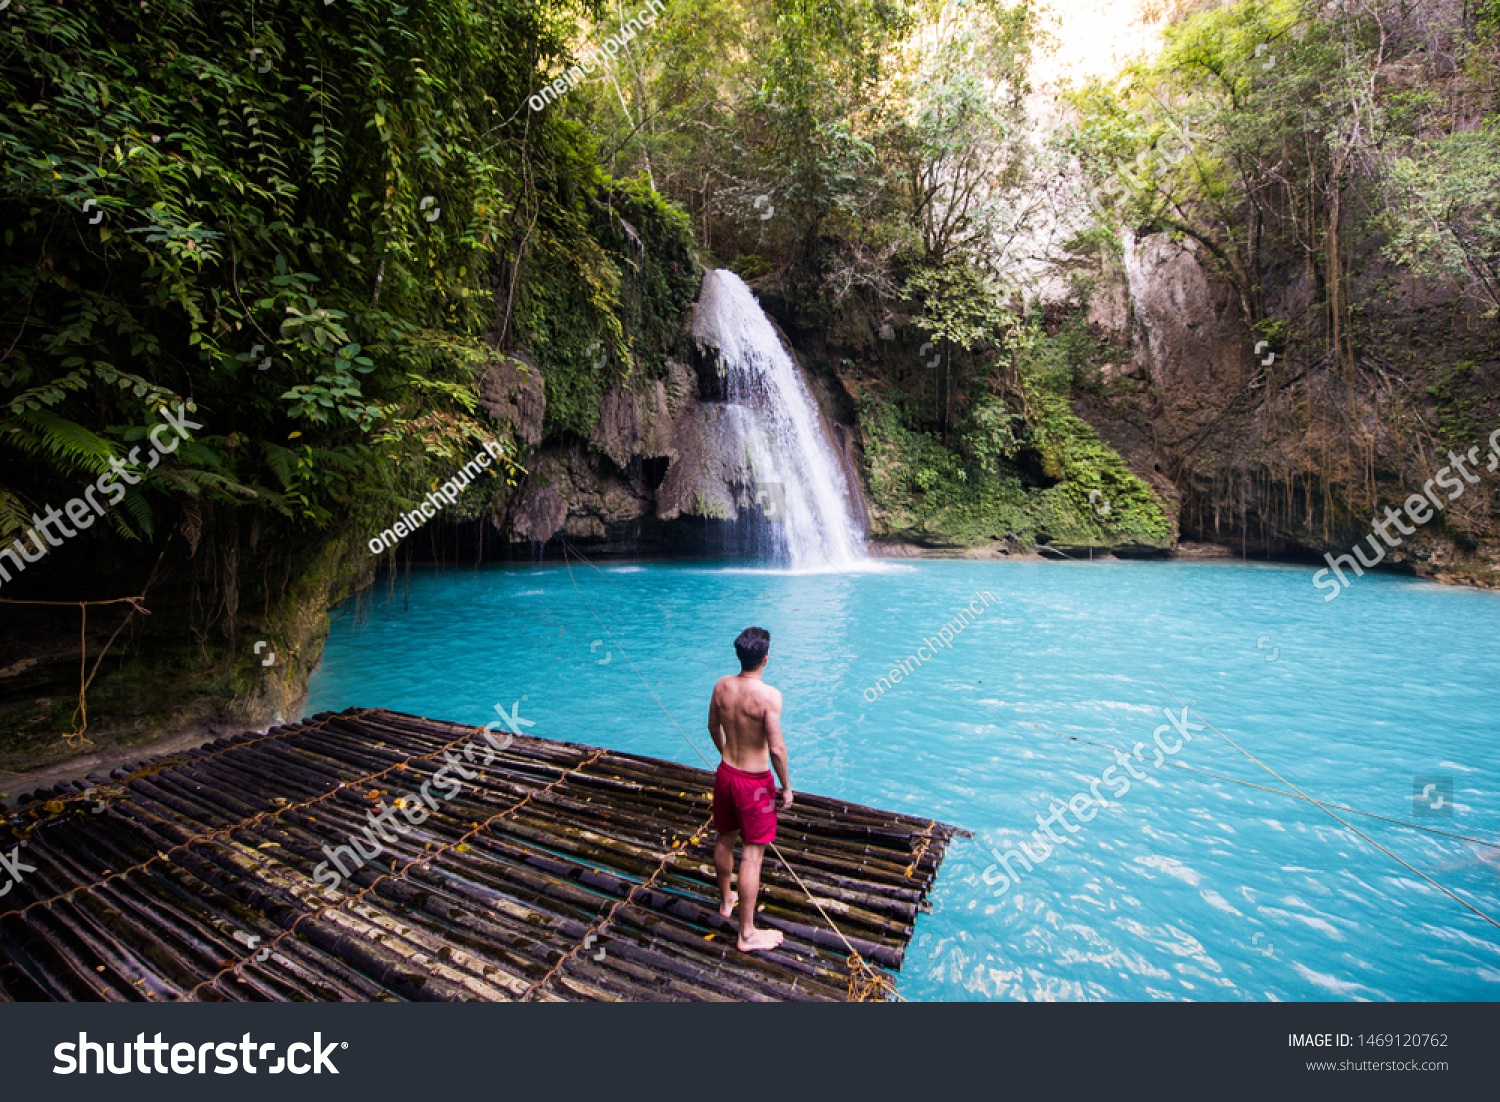 Kawasan waterfalls located on Cebu Island, Philippines - Beautiful waterfall in the jungle #1469120762